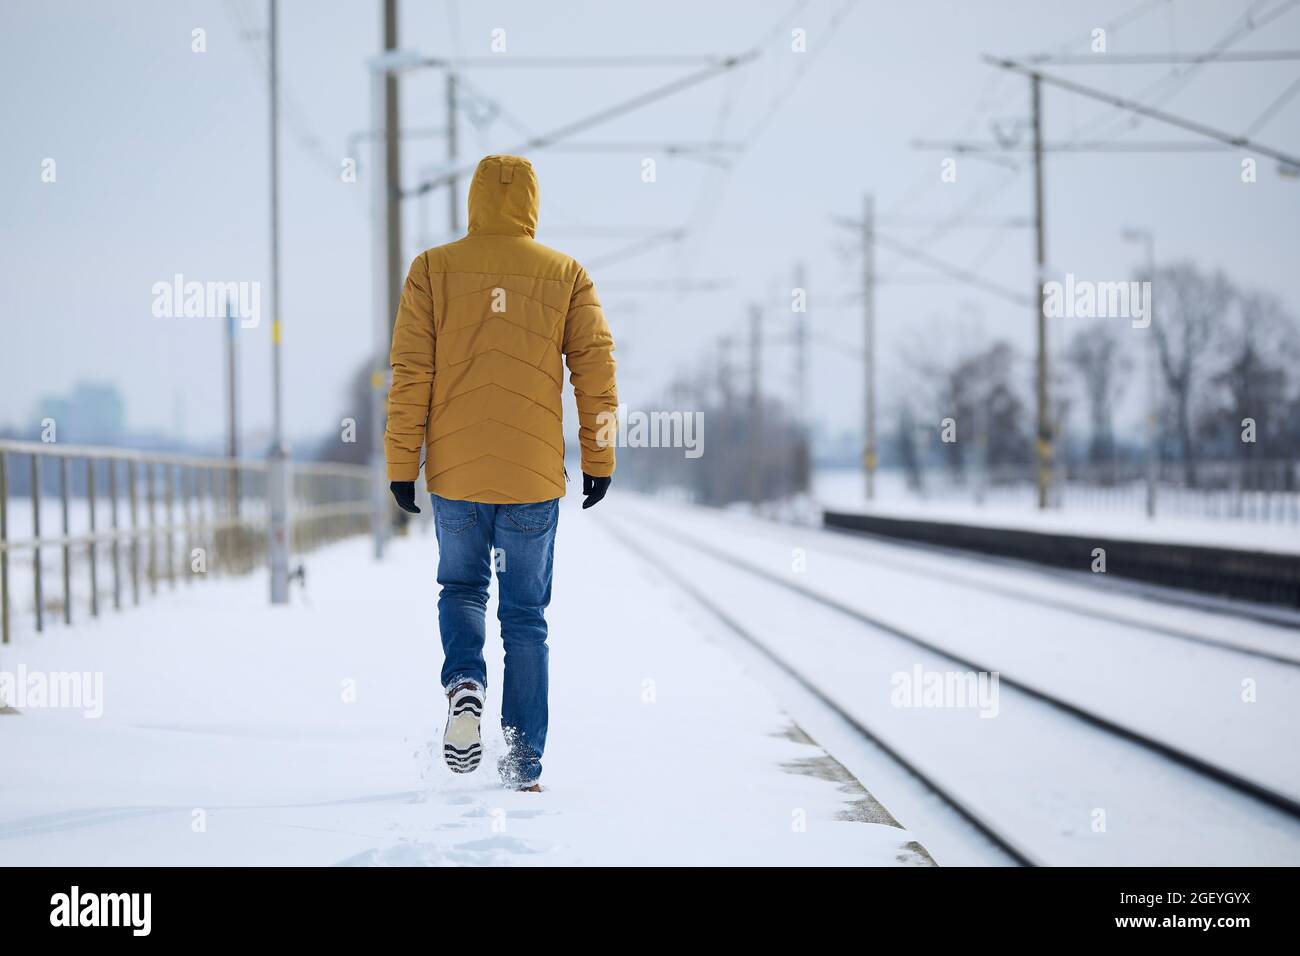 Rückansicht der einsamen Person in warmer Kleidung. Der Mann verlässt den Bahnhof vor einer verschneiten Landschaft. Stockfoto